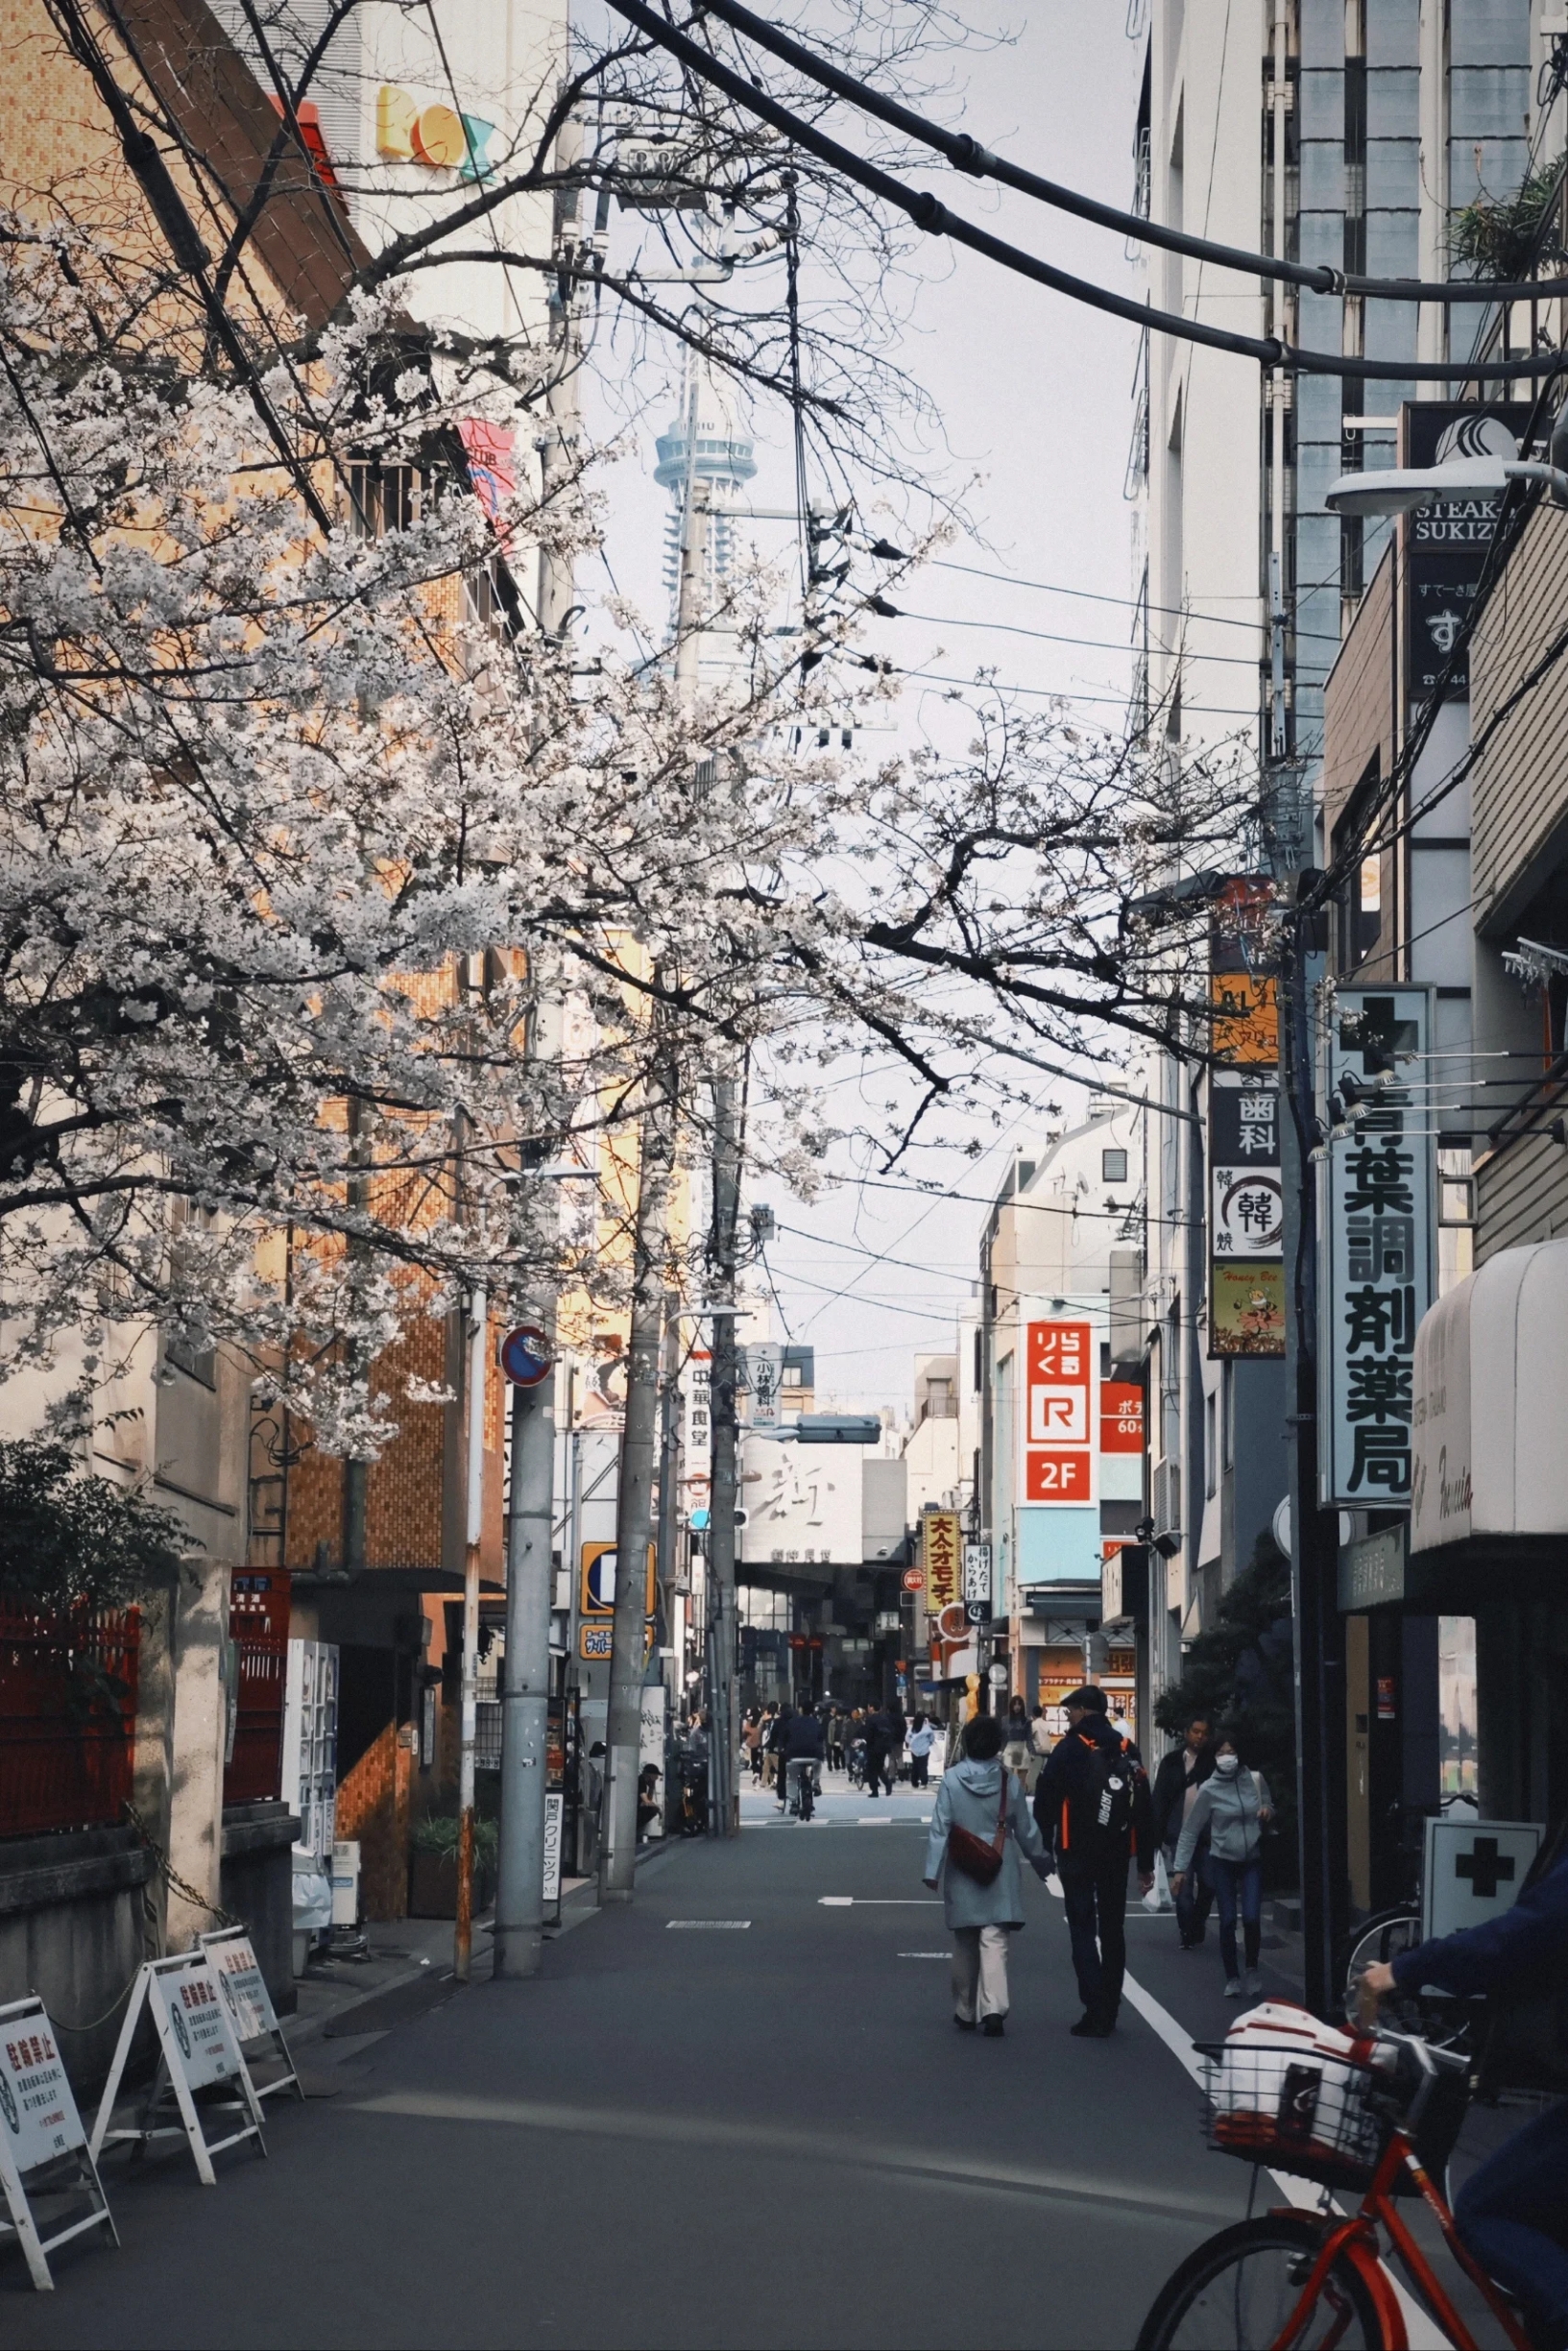 原来这就是日本的樱花季|||据说今年日本的樱花季推迟了两个多星期，原本赶上的是樱花季的末尾，没想到离